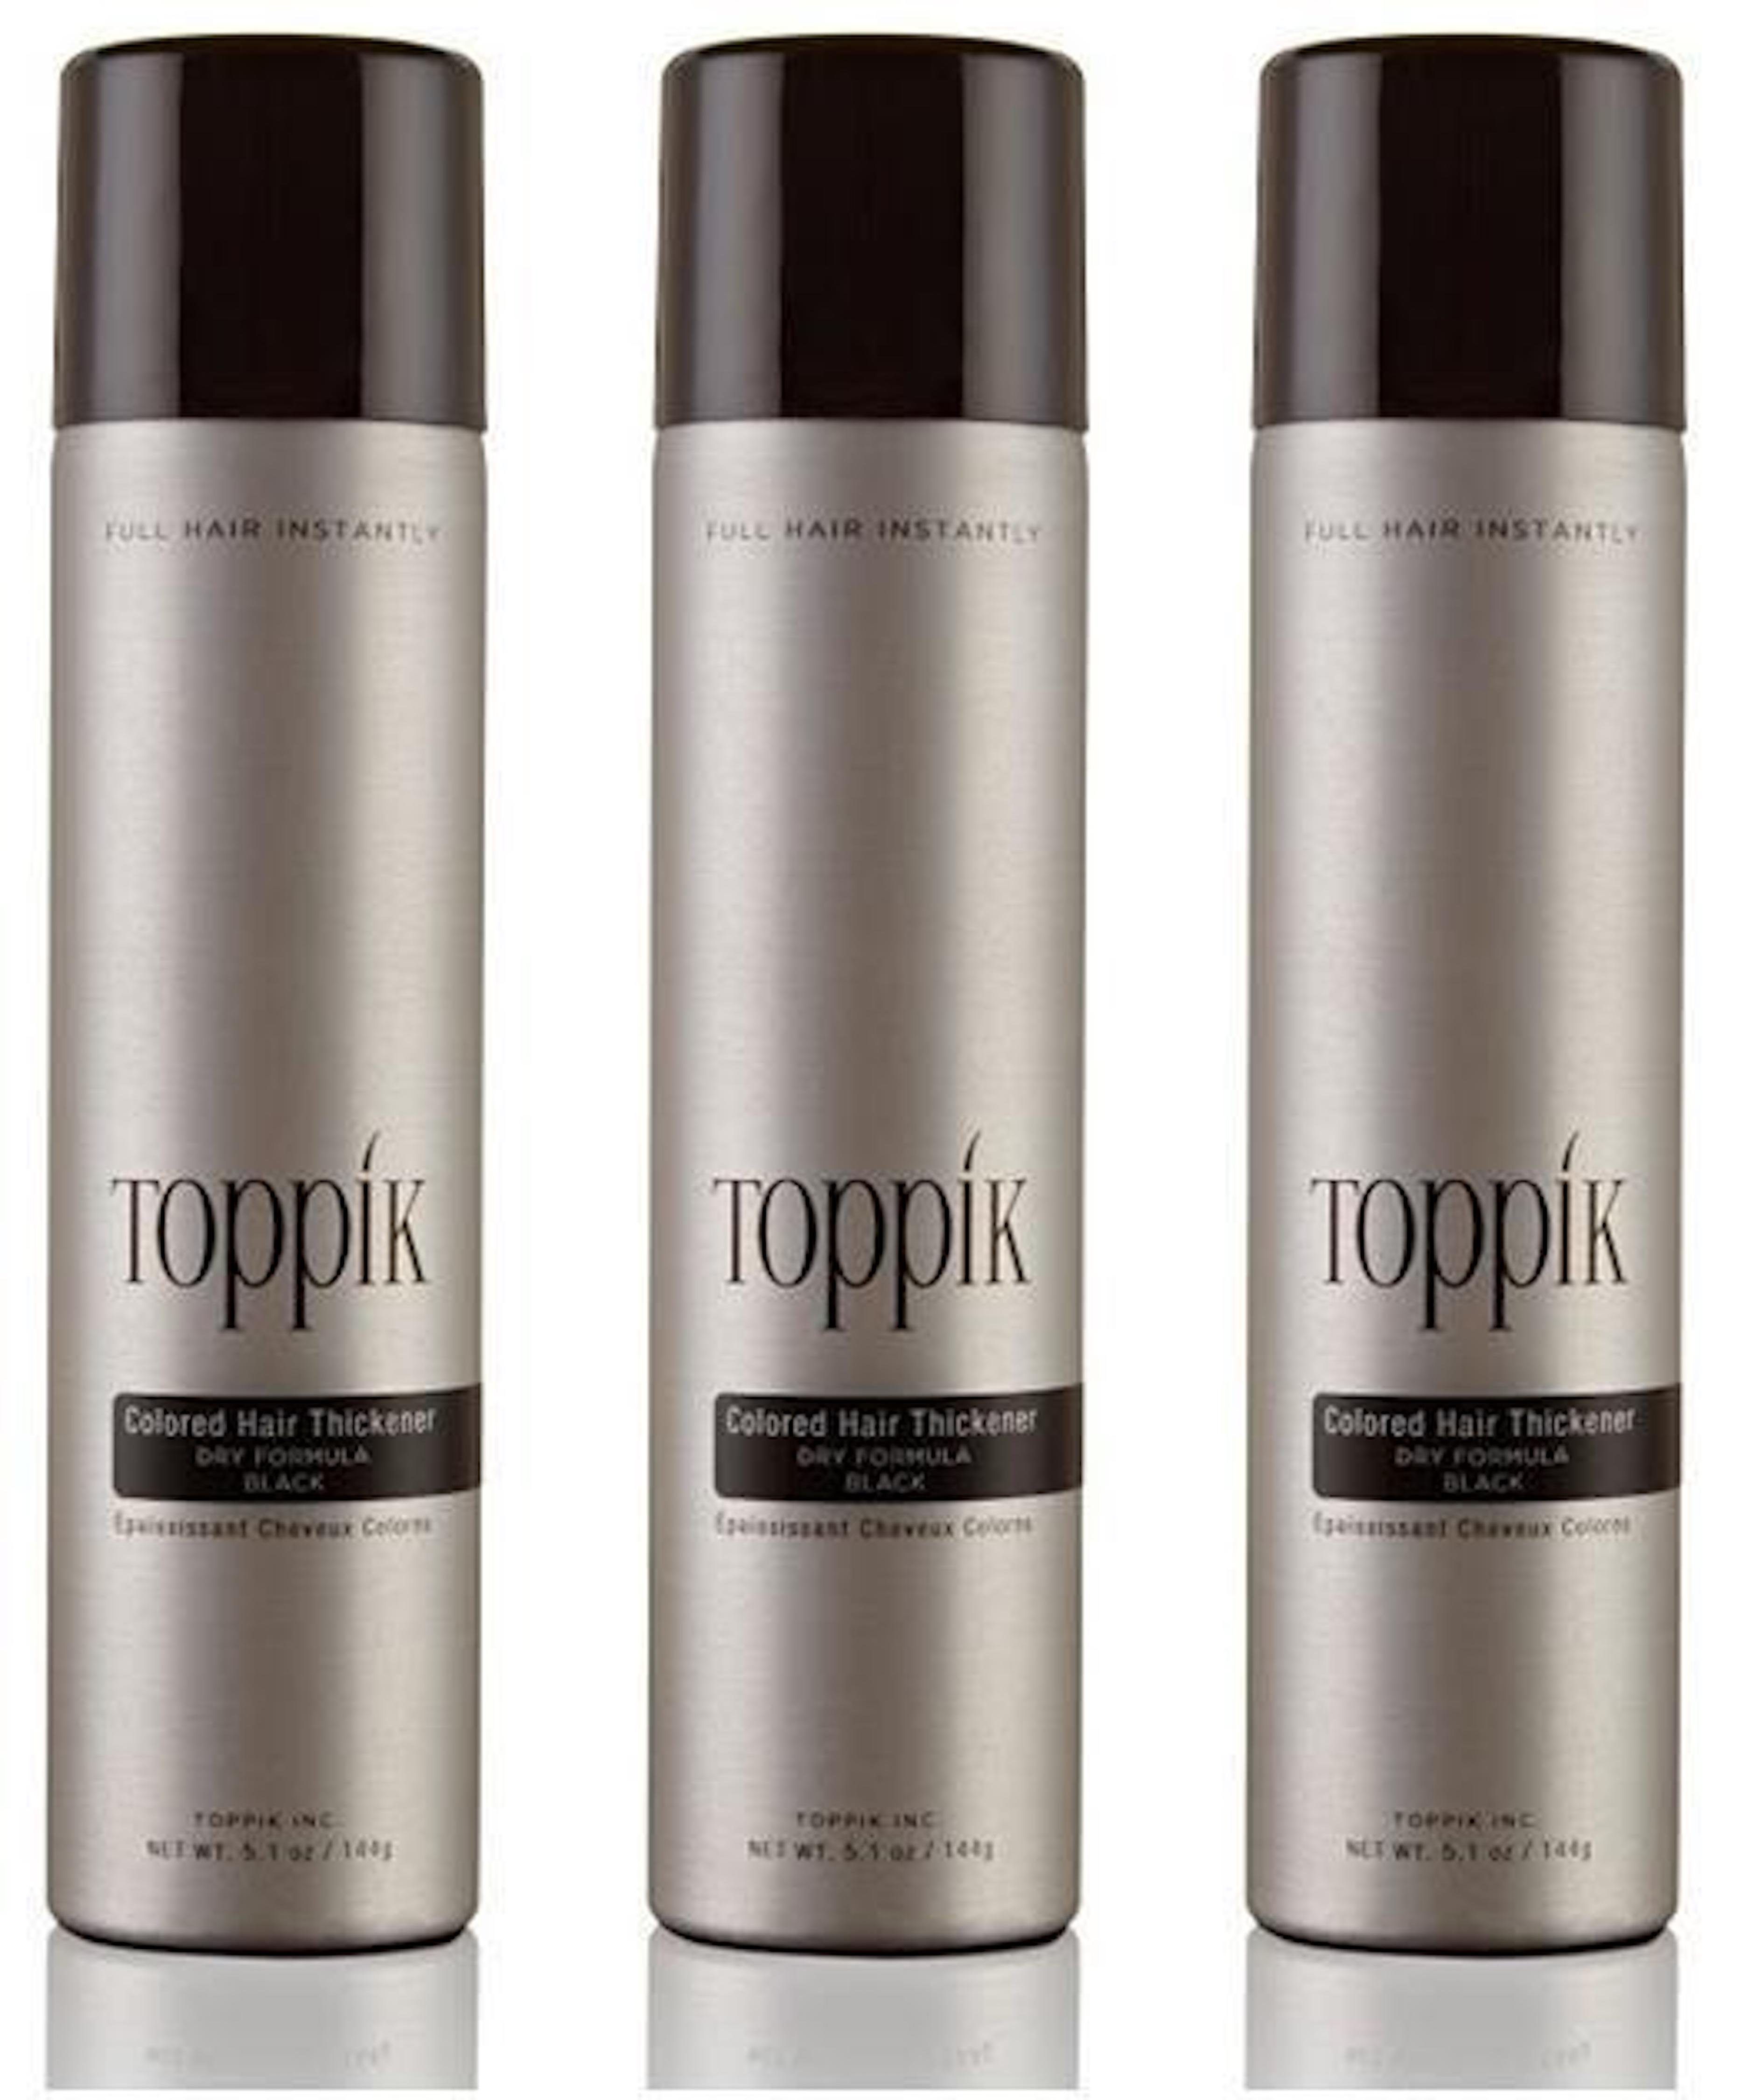 TOPPIK Haarstyling-Set 3 x TOPPIK Hair Thickener Spray - Haarverdichtungsspray - Haarverdichtung - Haarverdichter, 3 x 144ml, Für mehr Fülle Dunkelbraun